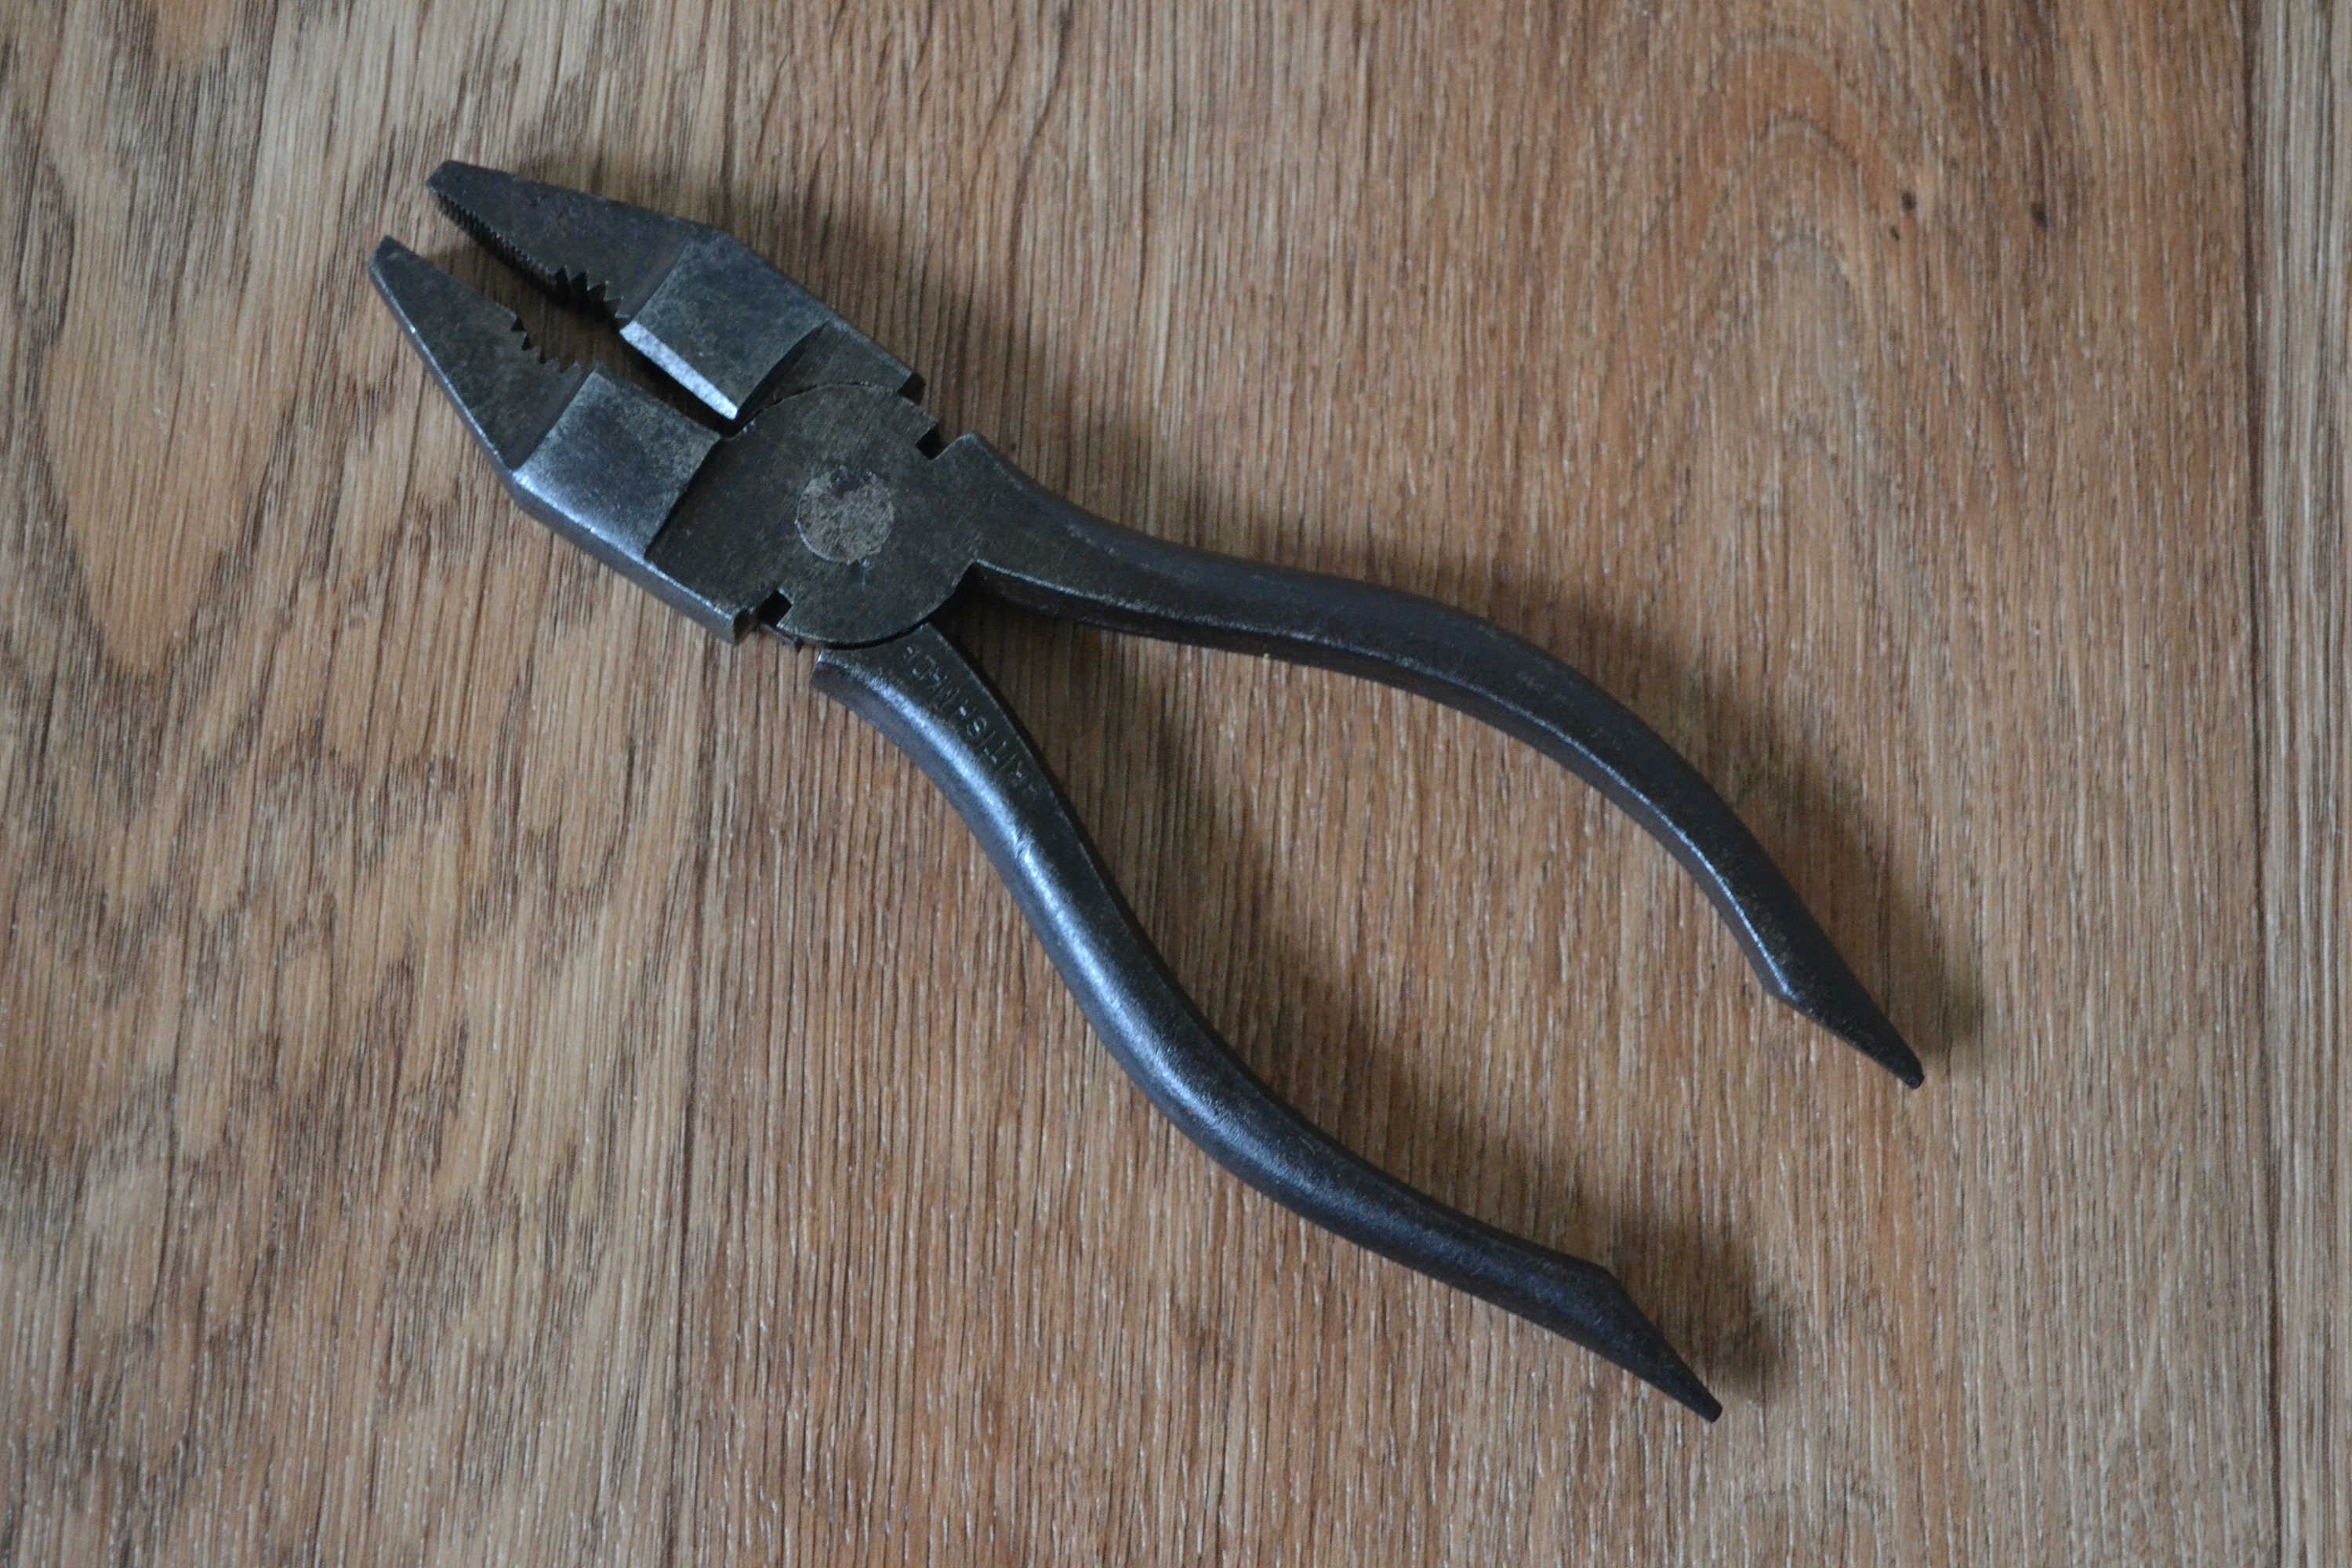 Vintage Metalworking Pliers 